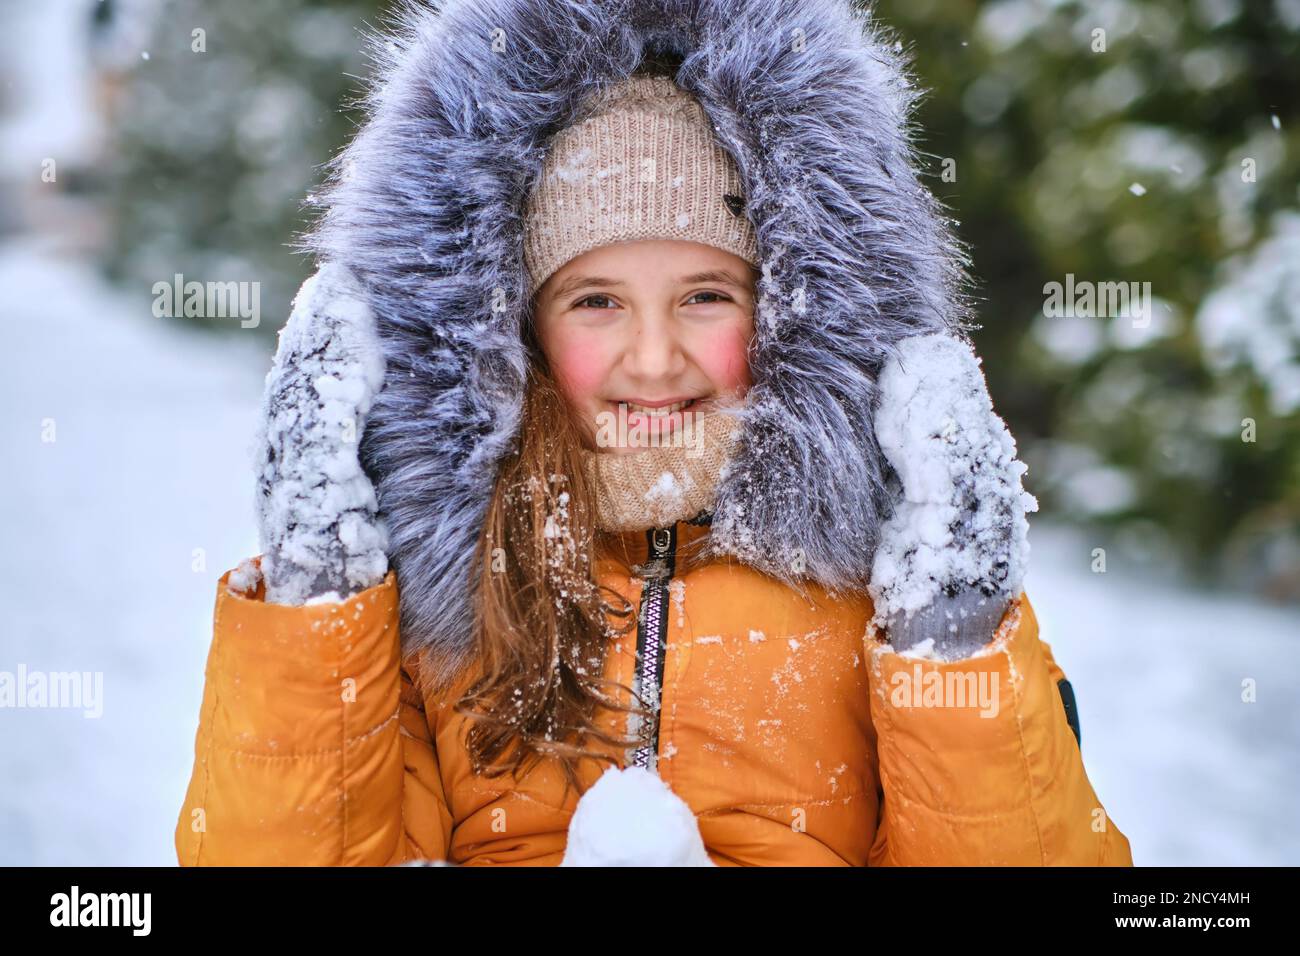 Nahaufnahme eines glücklichen Mädchens in einer pelzigen Kapuze, lustiges kleines Mädchen, das während des Schneefalls im wunderschönen Winterpark Spaß hat Stockfoto